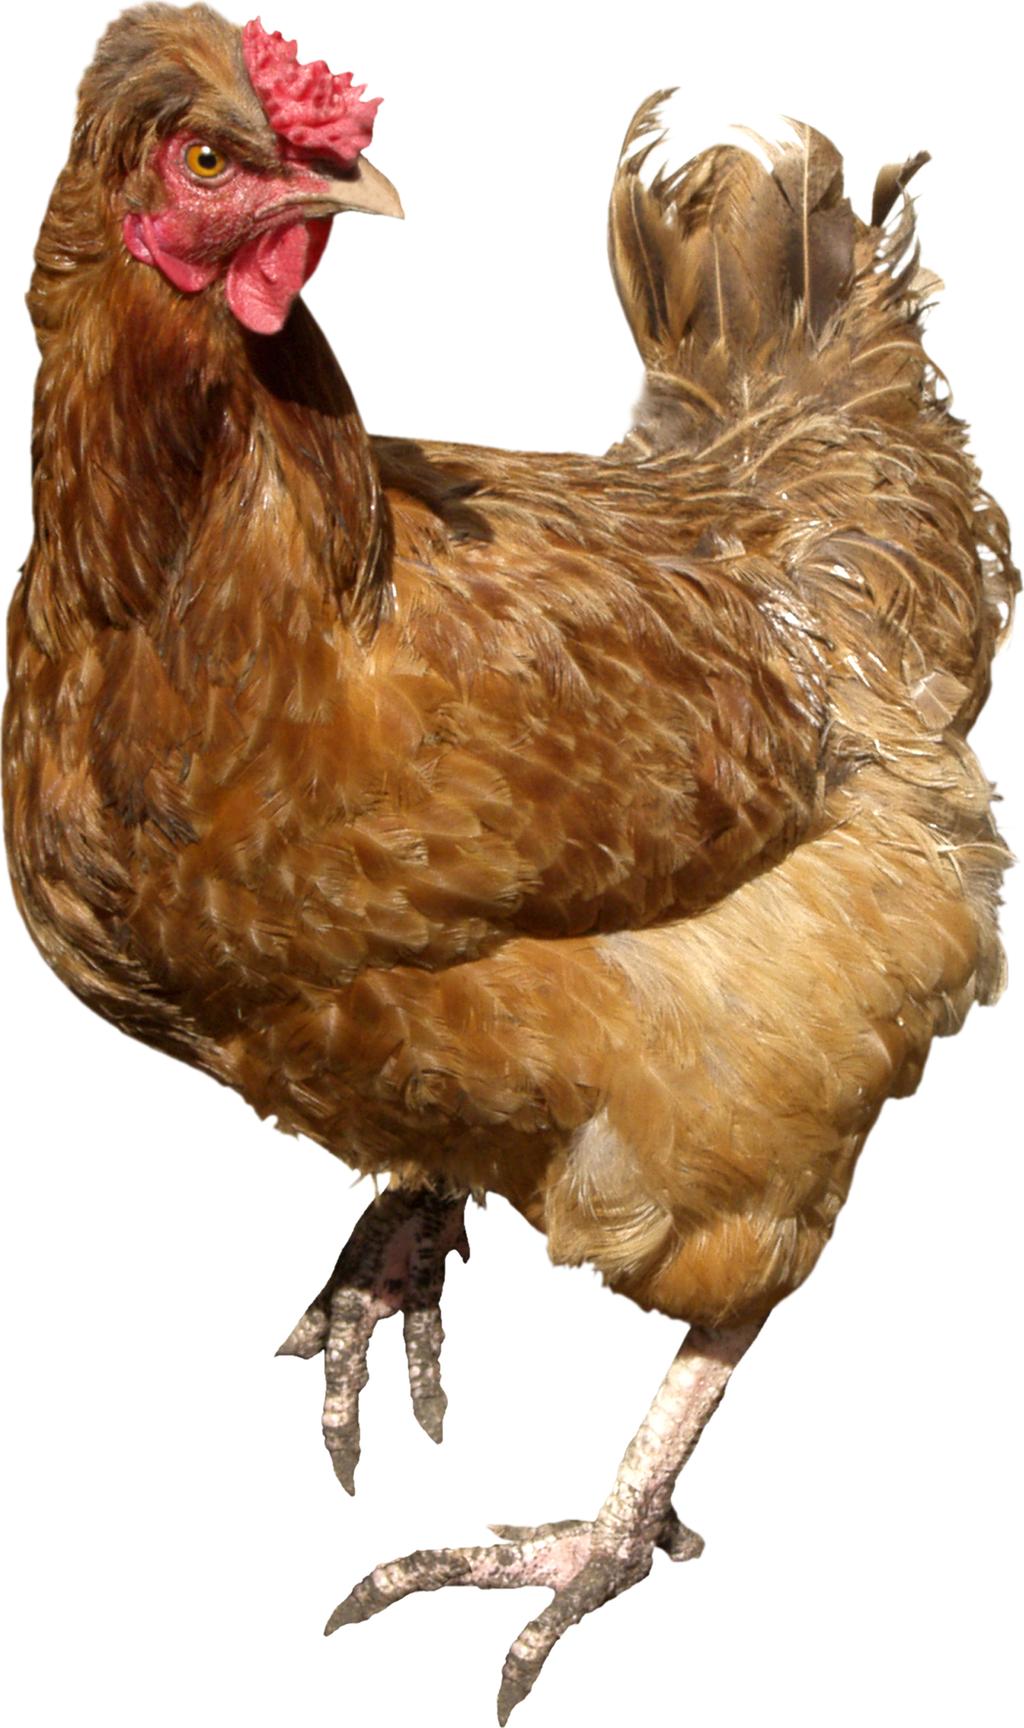 PASEN KOMT ERAAN! Lees daarom deze 10 dingen die je niet wist over kippen 1. Het ei was er eerst, toen pas de kip!